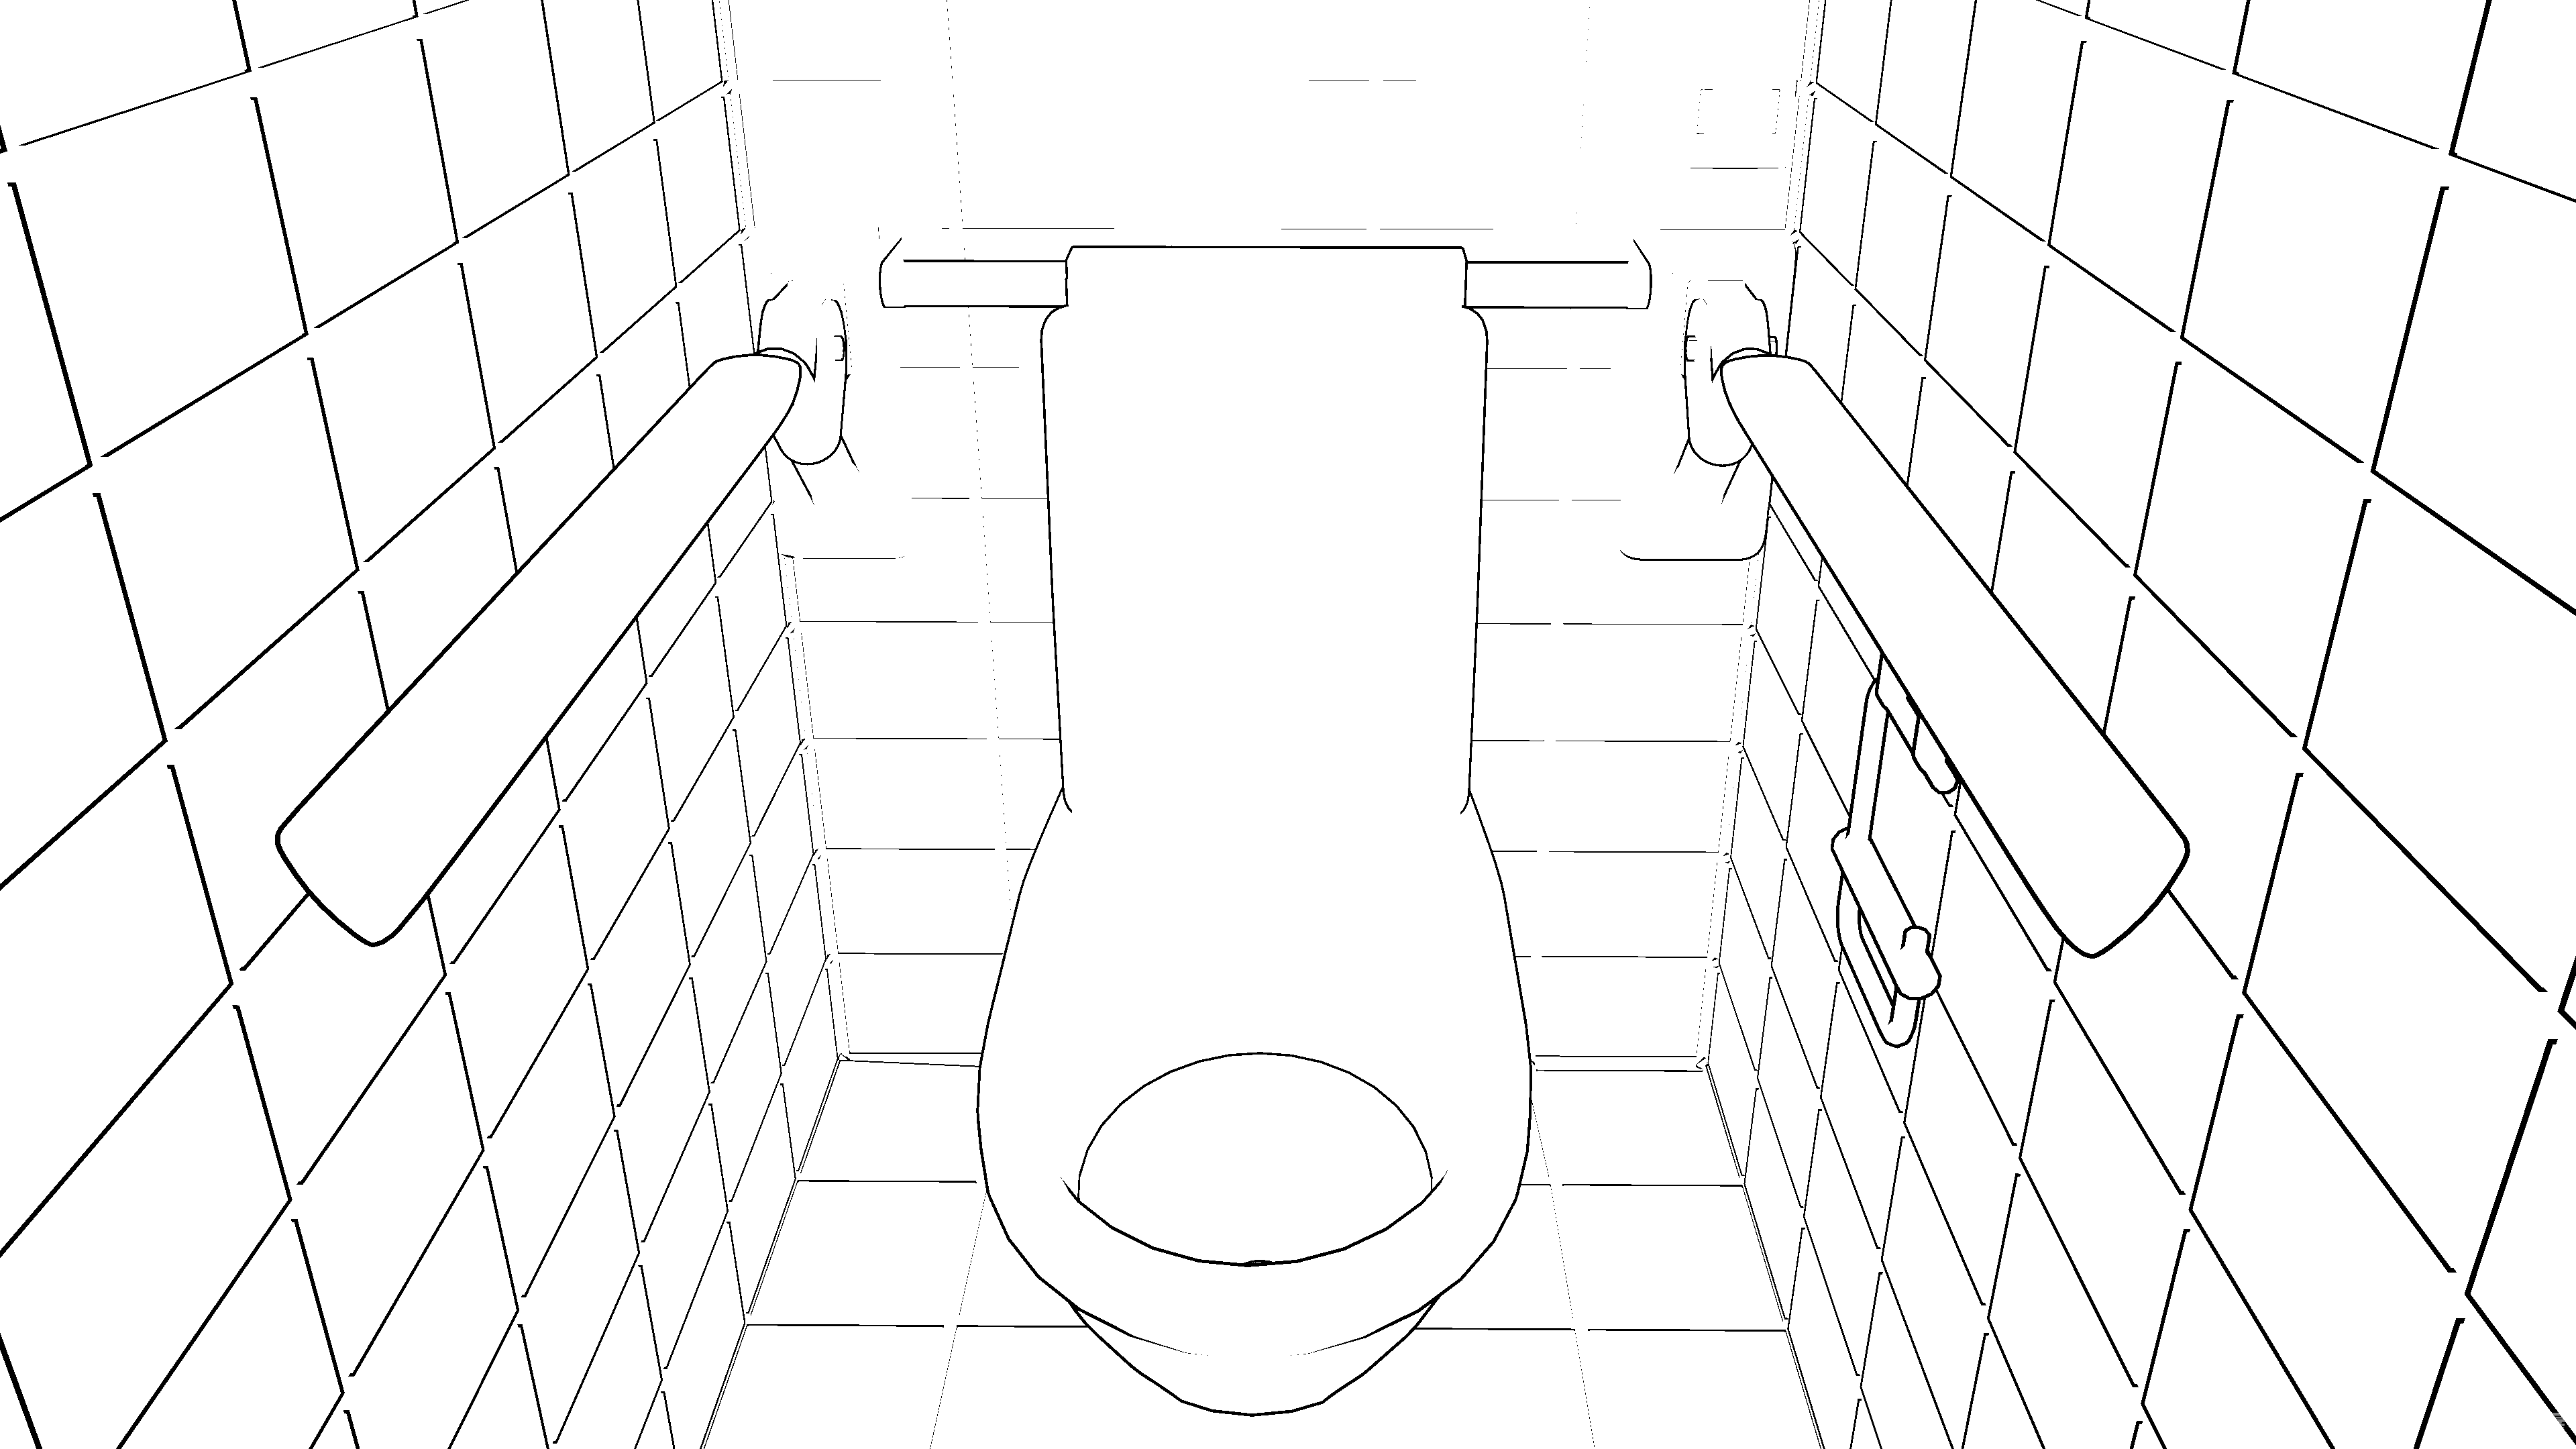 厕所的简笔画 简单图片